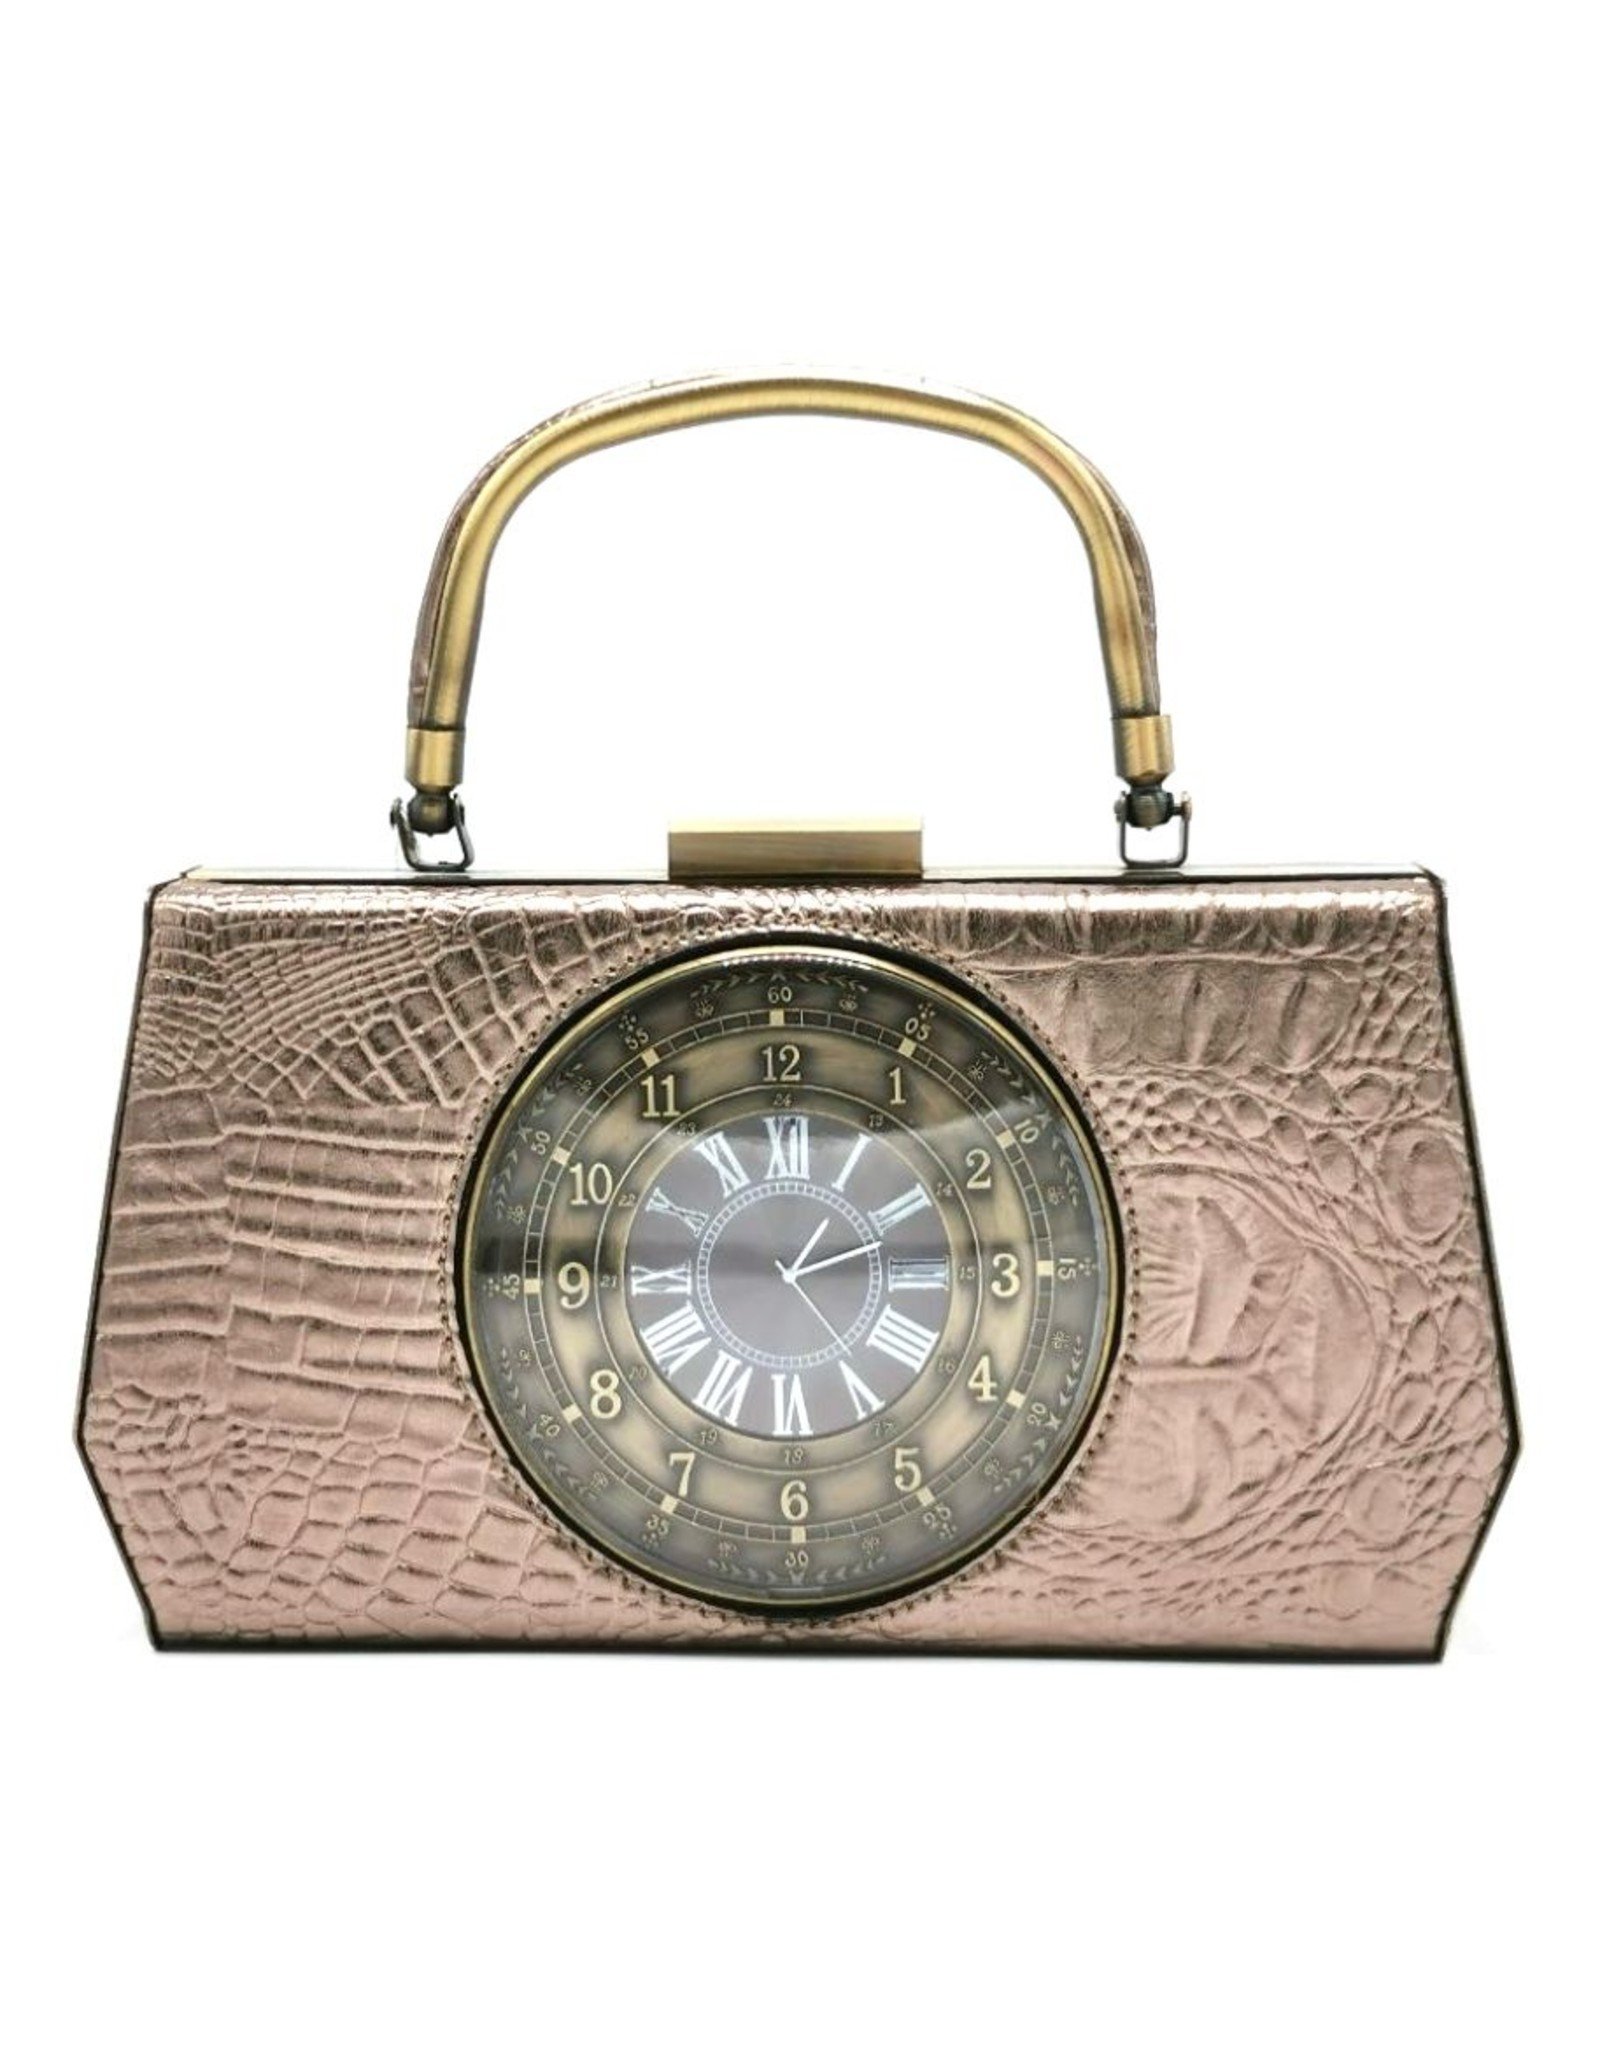 Magic Bags Retro tassen Vintage tassen - Handtas met Echte Klok vintage style grijs